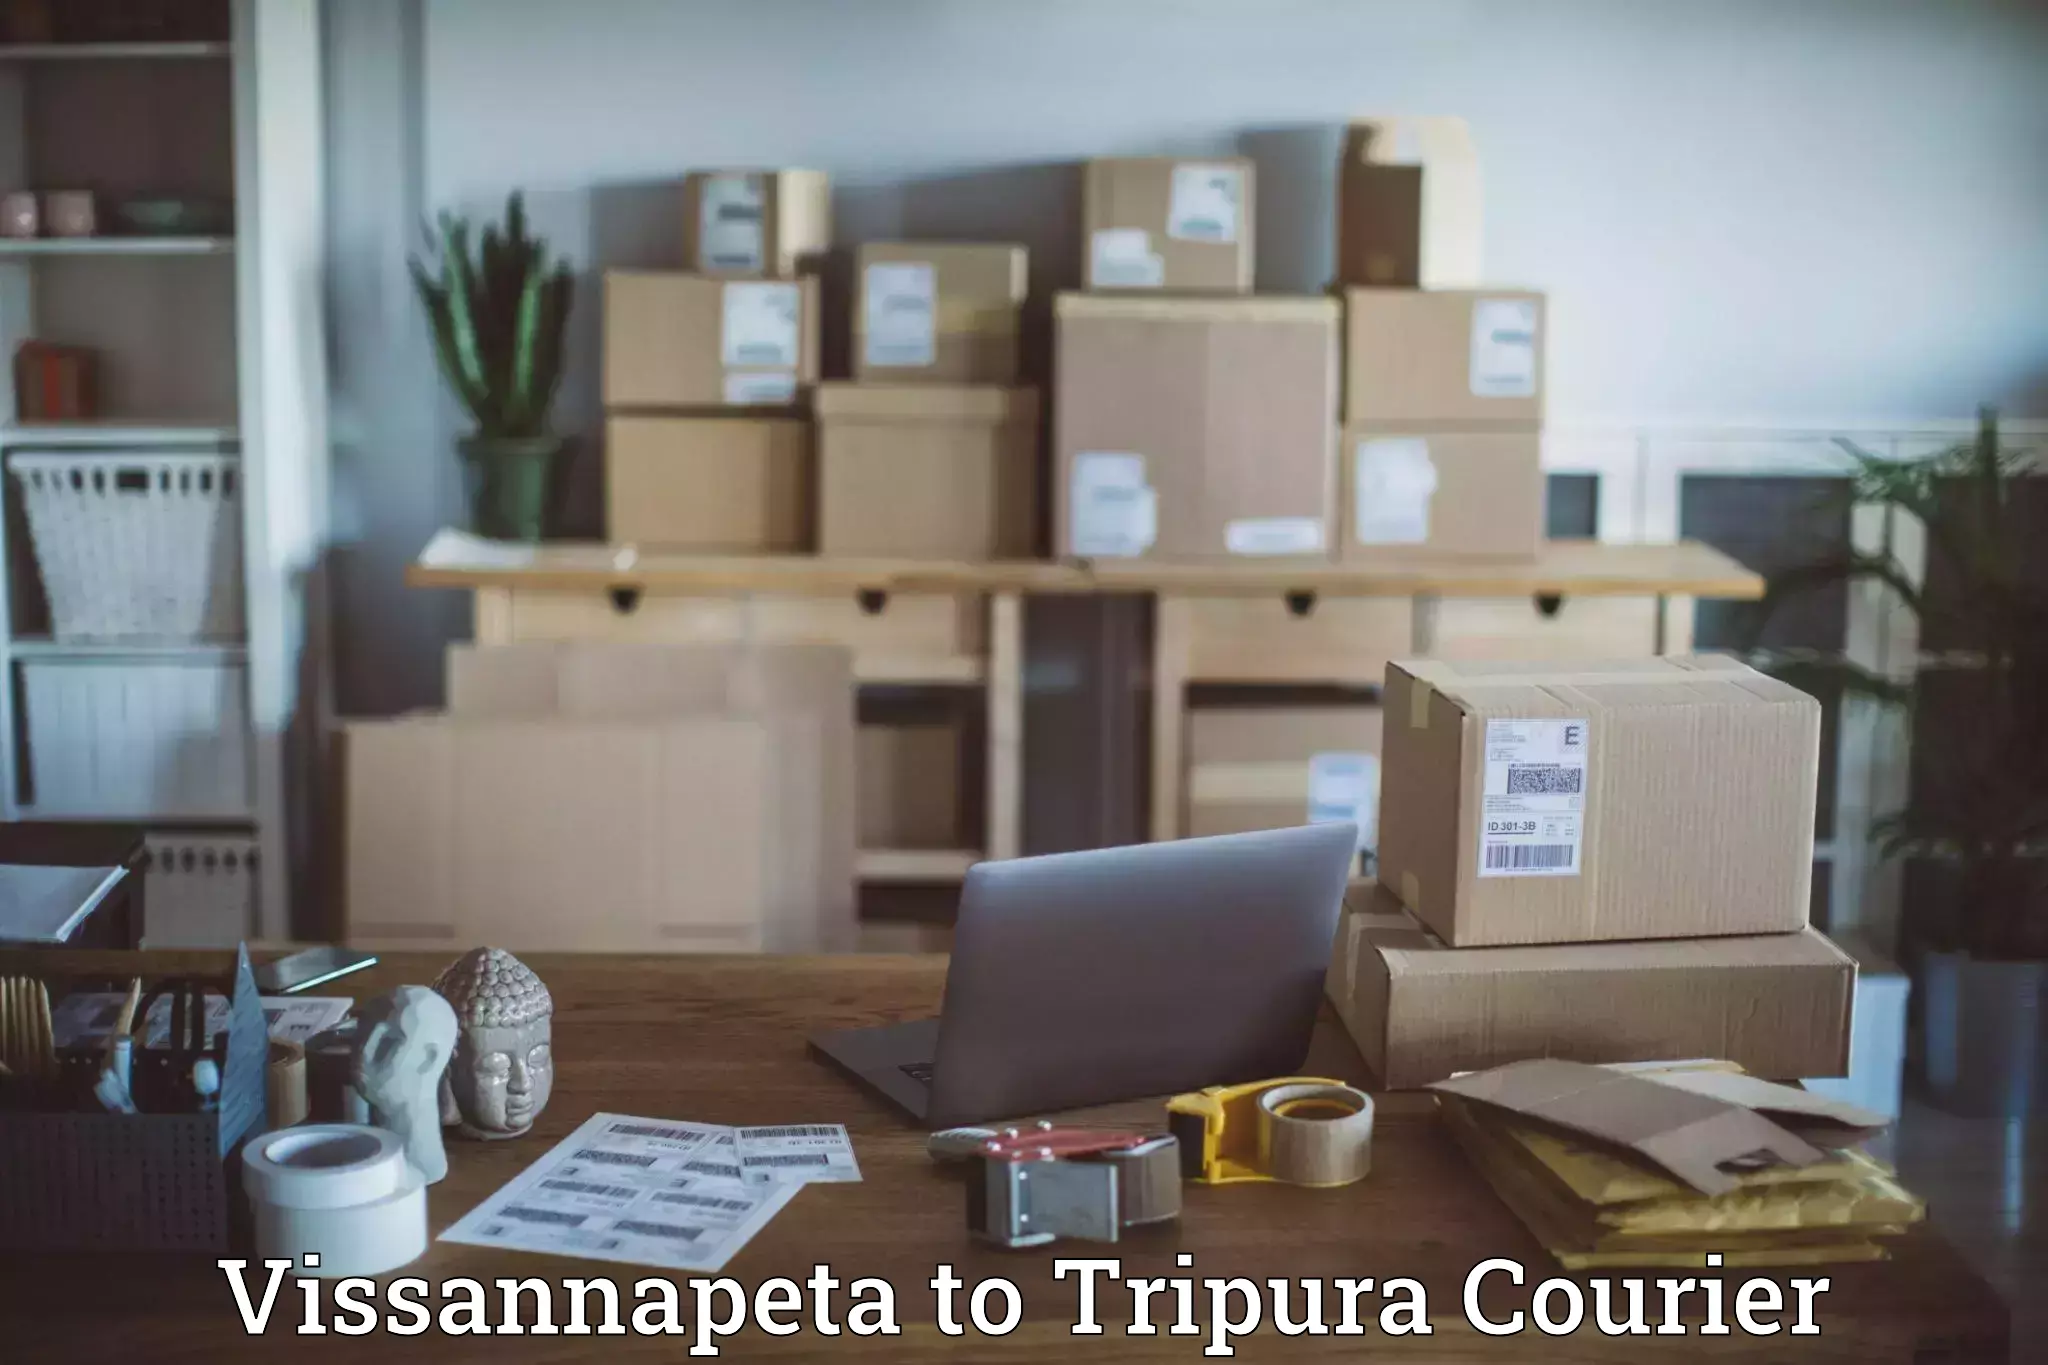 State-of-the-art courier technology Vissannapeta to IIIT Agartala